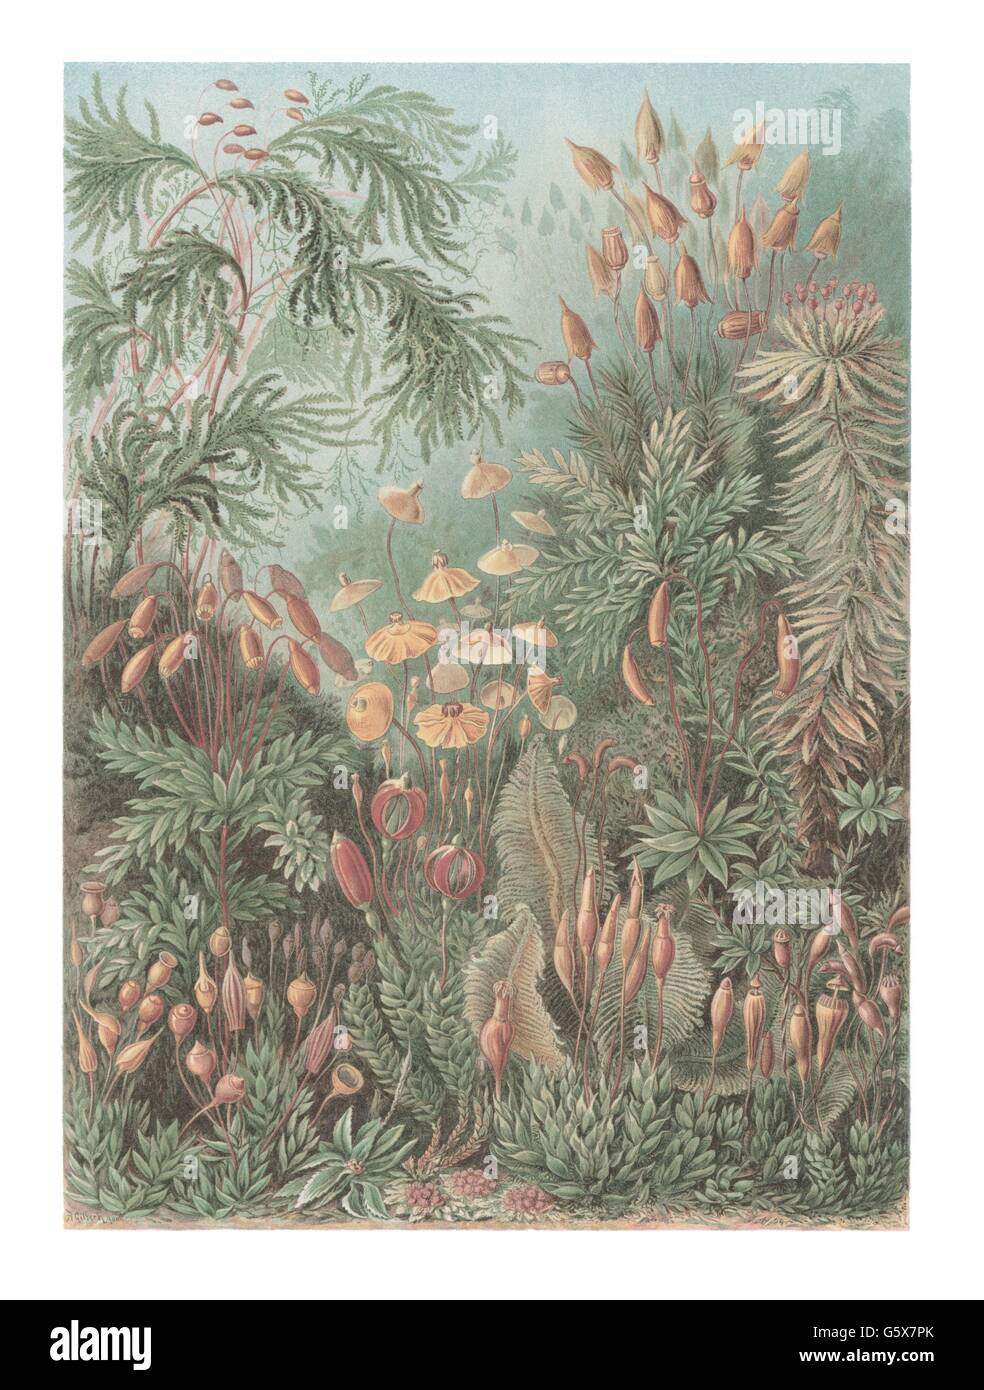 botanique, mousses, bryophyta, lithographie de couleur, de: Ernst Haeckel, 'Kunstformen der Natur', Leipzig - Vienne, 1899 - 1904, droits additionnels-Clearences-non disponible Banque D'Images